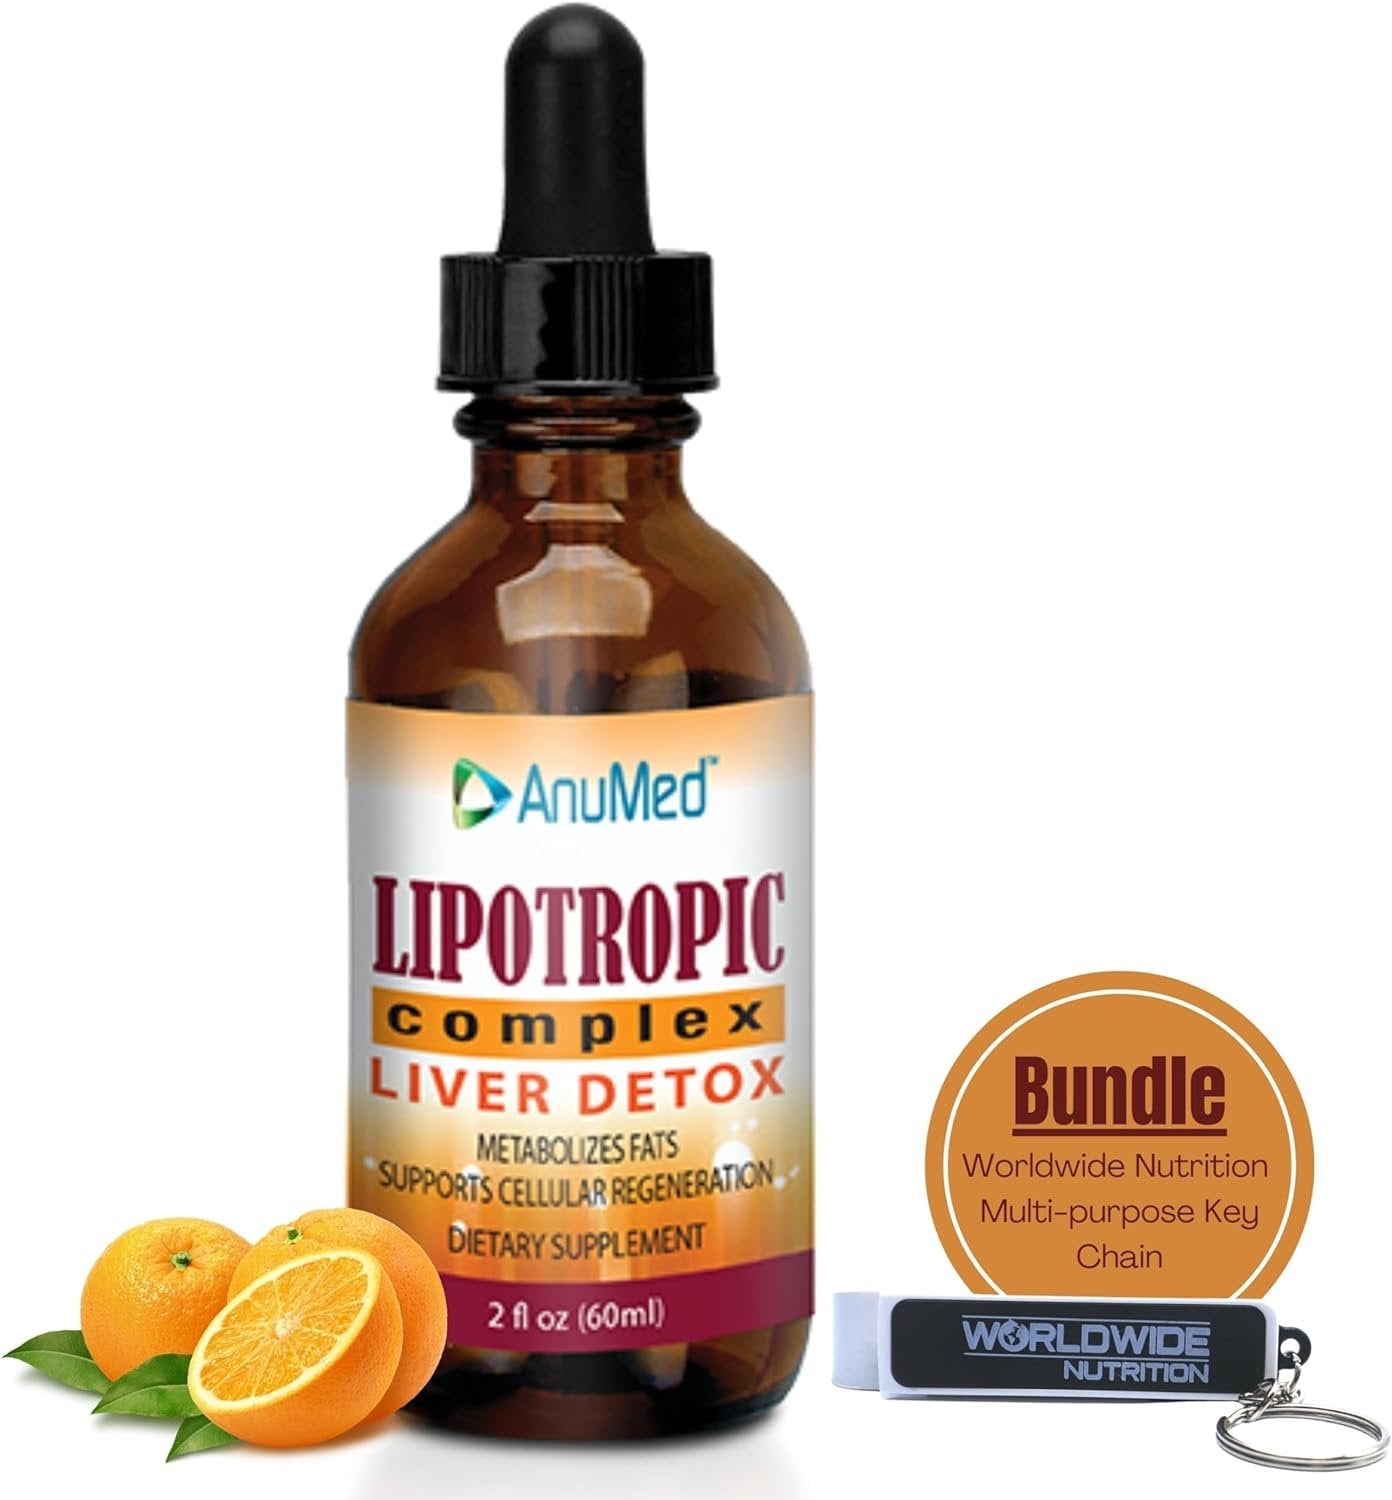 AnuMed International Lipotropic Complex Drops - Liver Detox - Metabolizes Fats - Supports Cellular Regeneration - Vit. B12, B6, Folic Acid - Orange Flavor - 2 oz